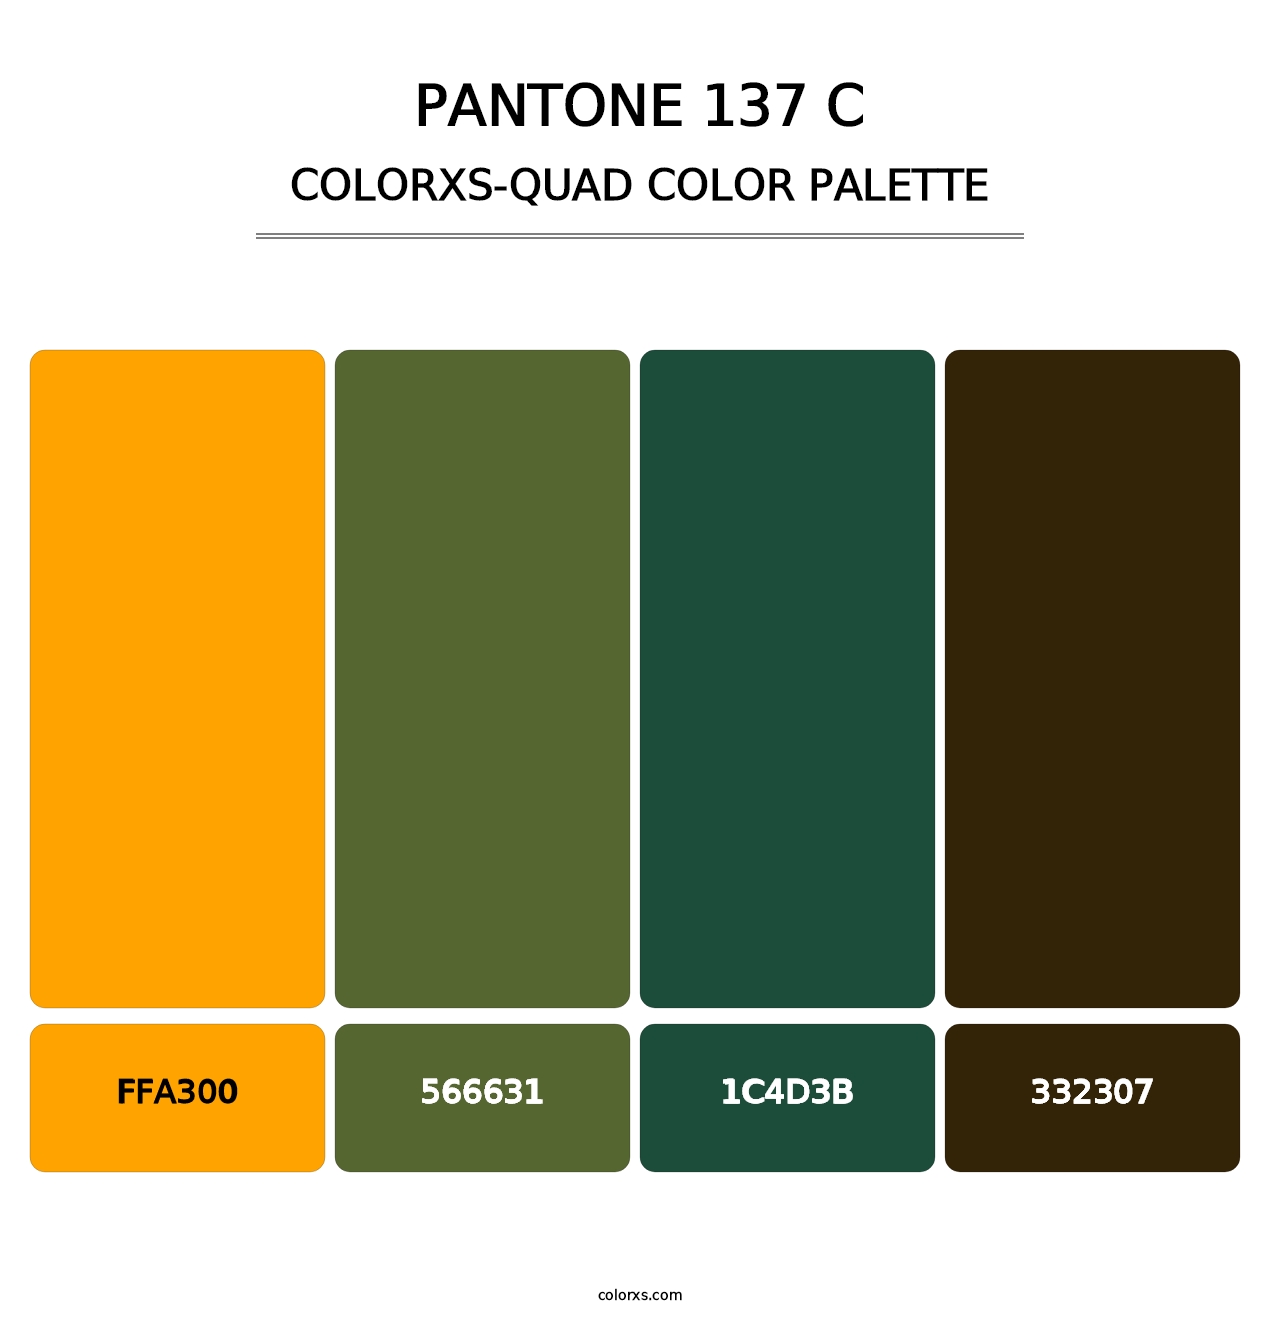 PANTONE 137 C - Colorxs Quad Palette